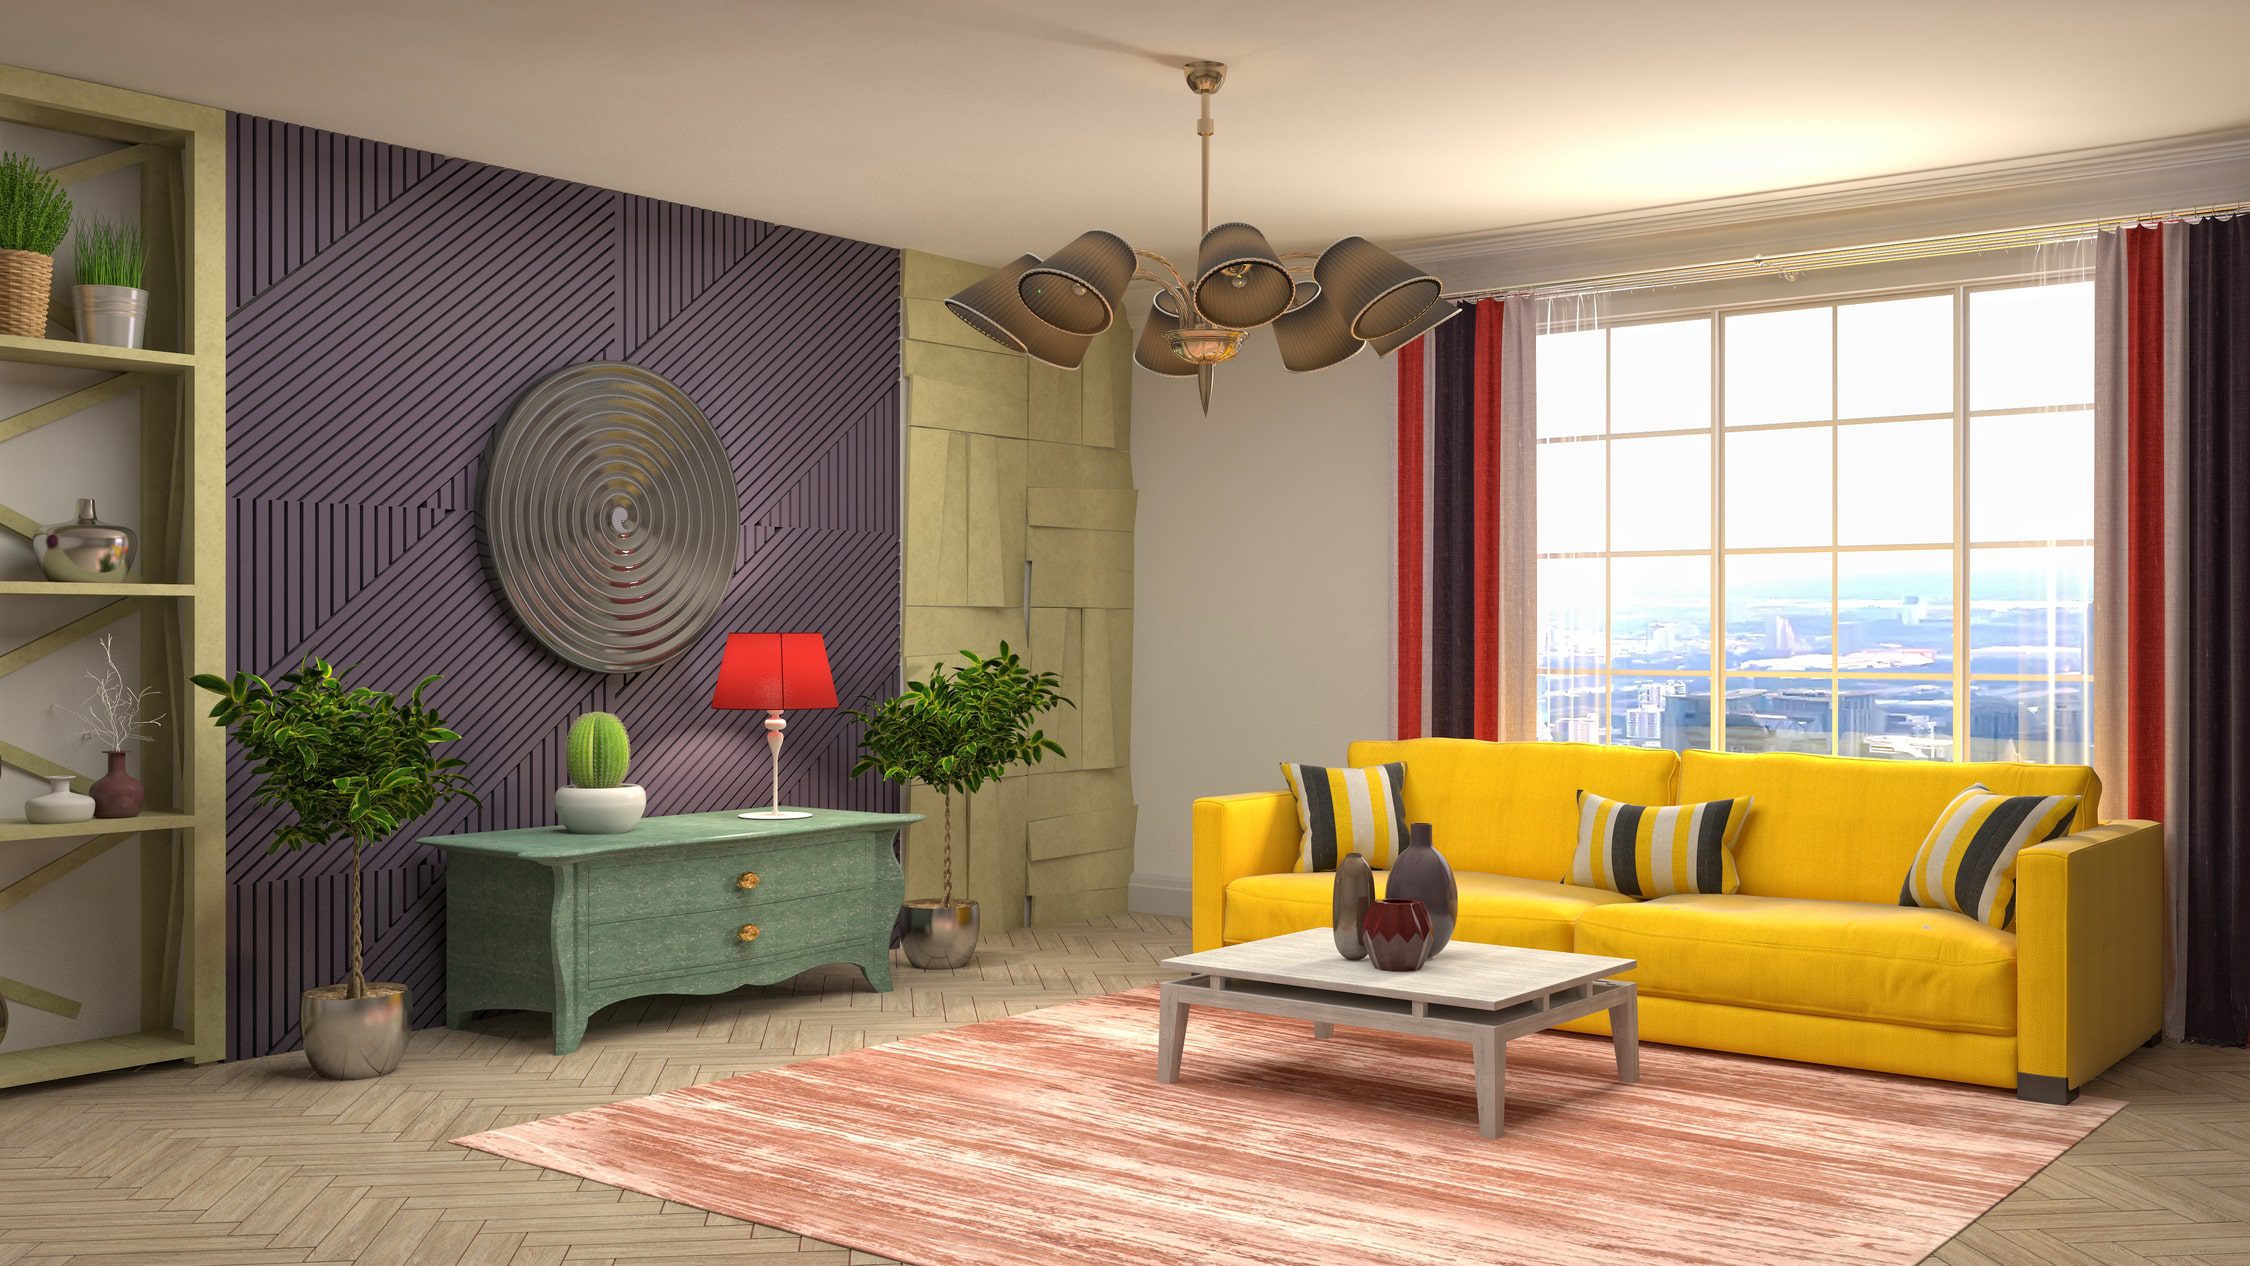 illustration-living-room-interior-12-min